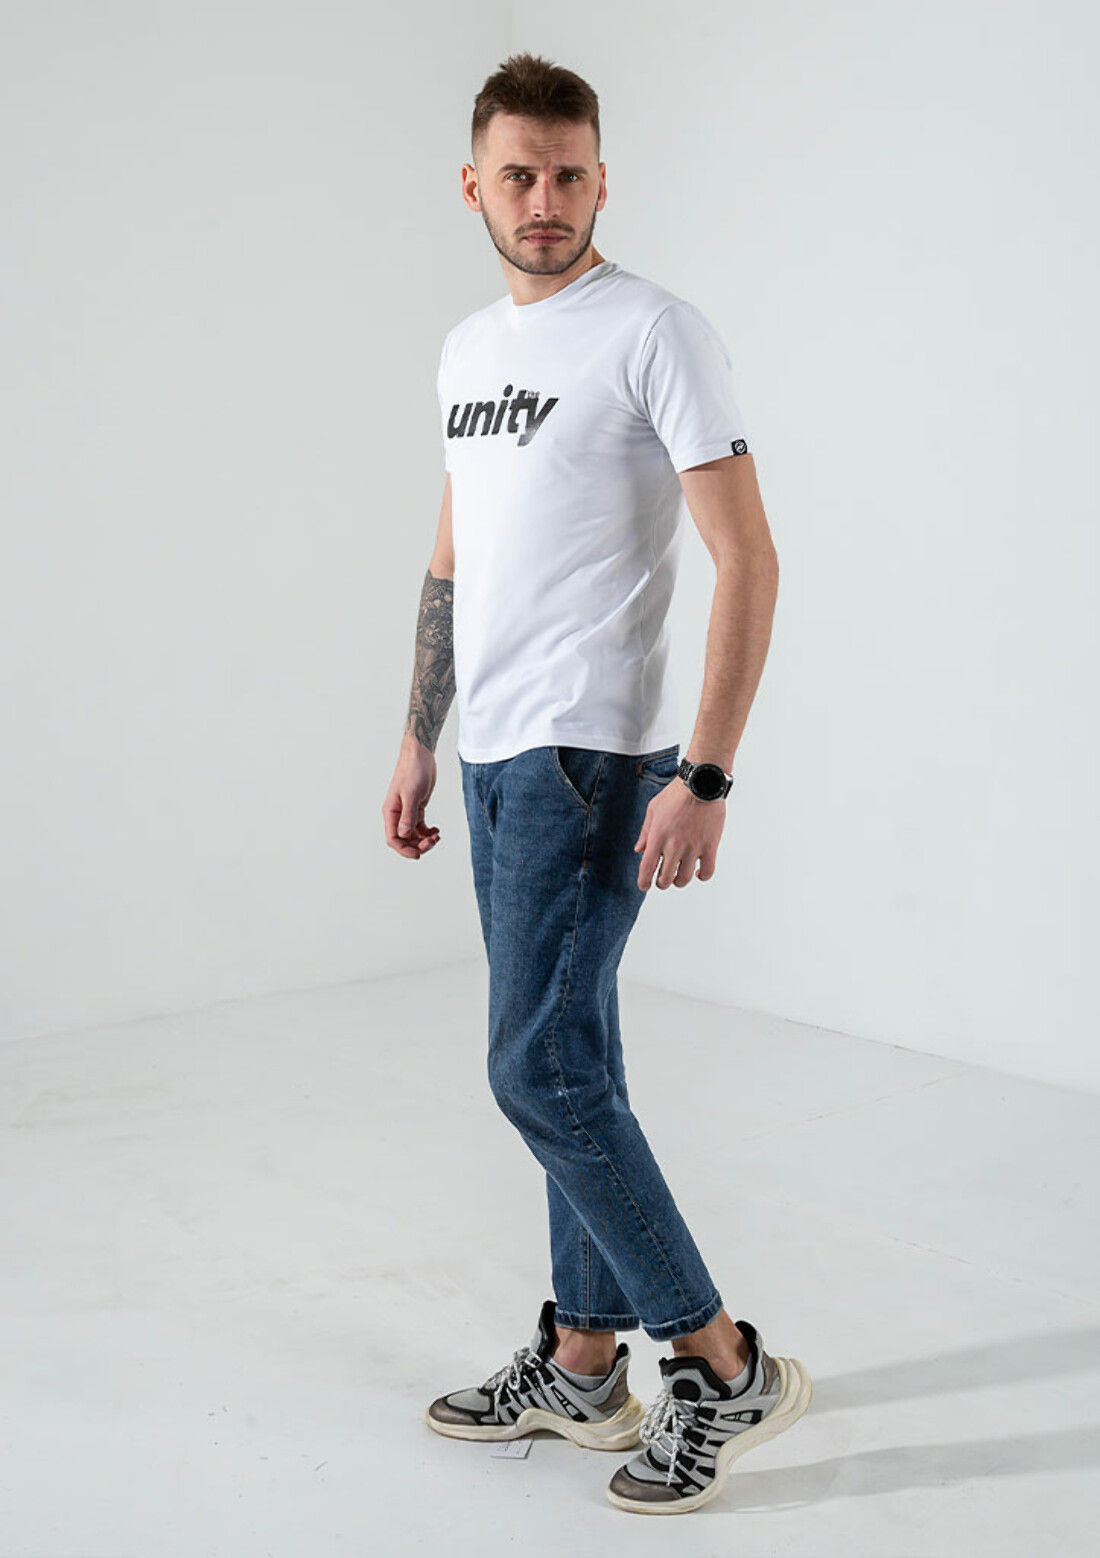 Мужская футболка unity 40032